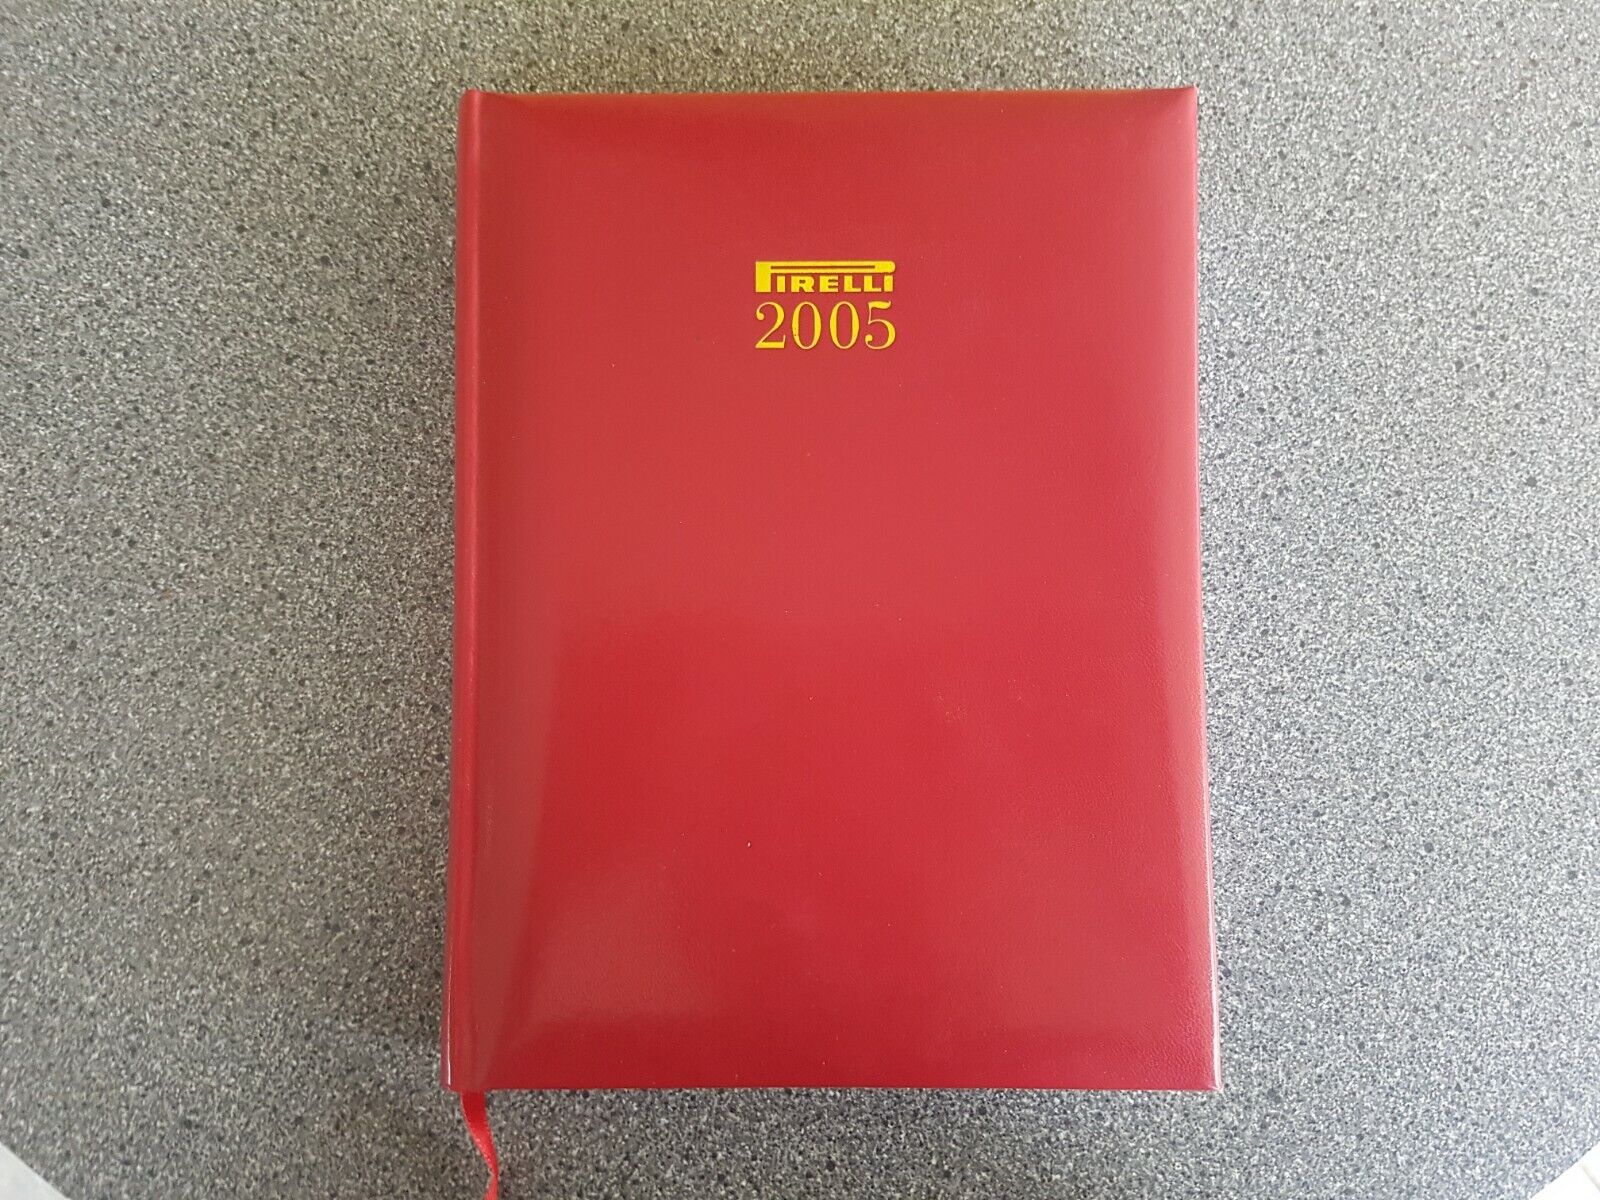 Genuine 2005 Pirelli Planner Notebook Dairy Collectable Calendar